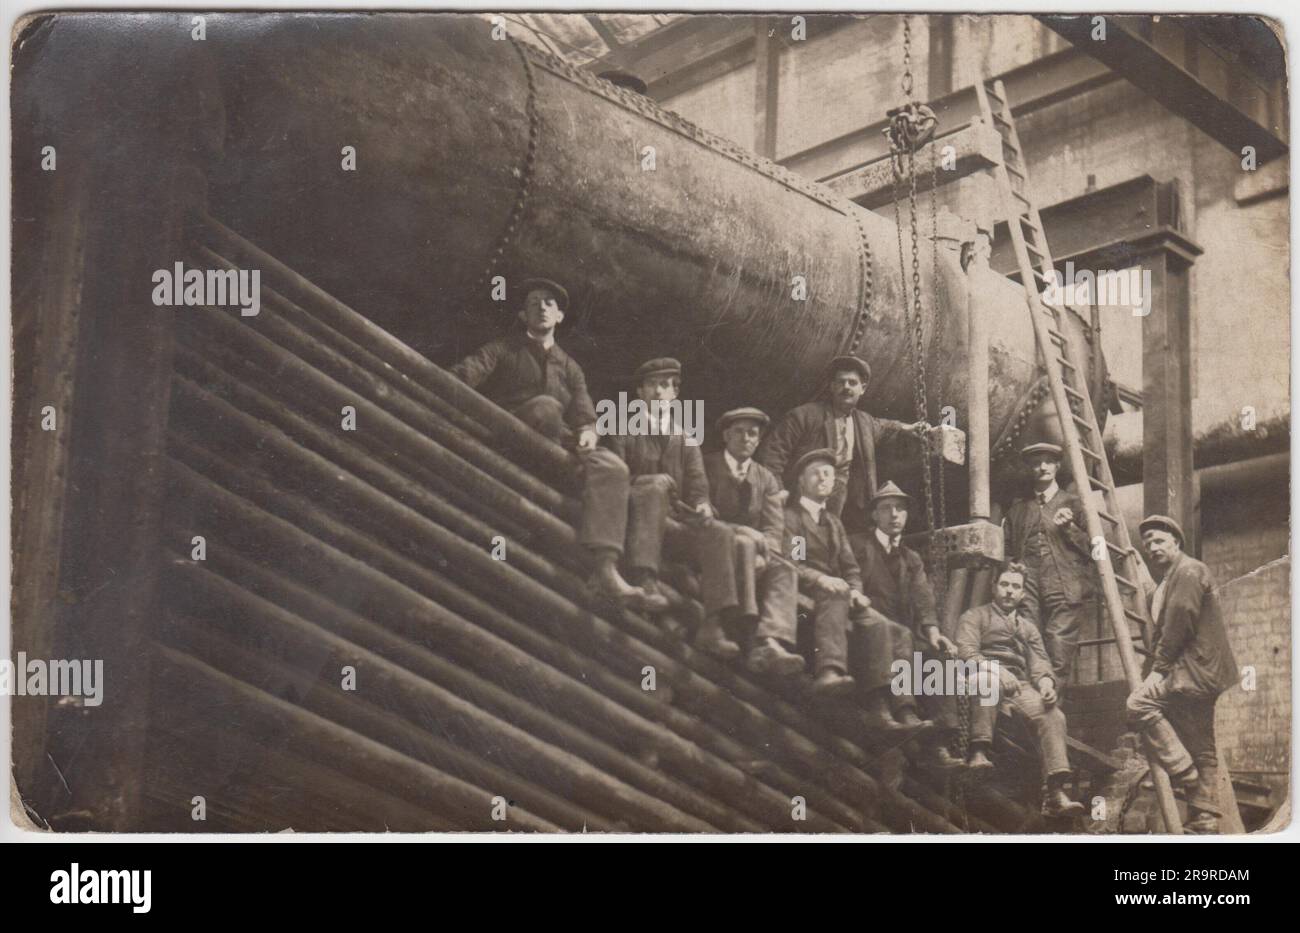 Enginemen: Foto einer Gruppe von Männern aus dem frühen 20. Jahrhundert, die neben einer großen Turbine oder einem Motor in einer Fabrik auf Rohren sitzen und stehen Stockfoto